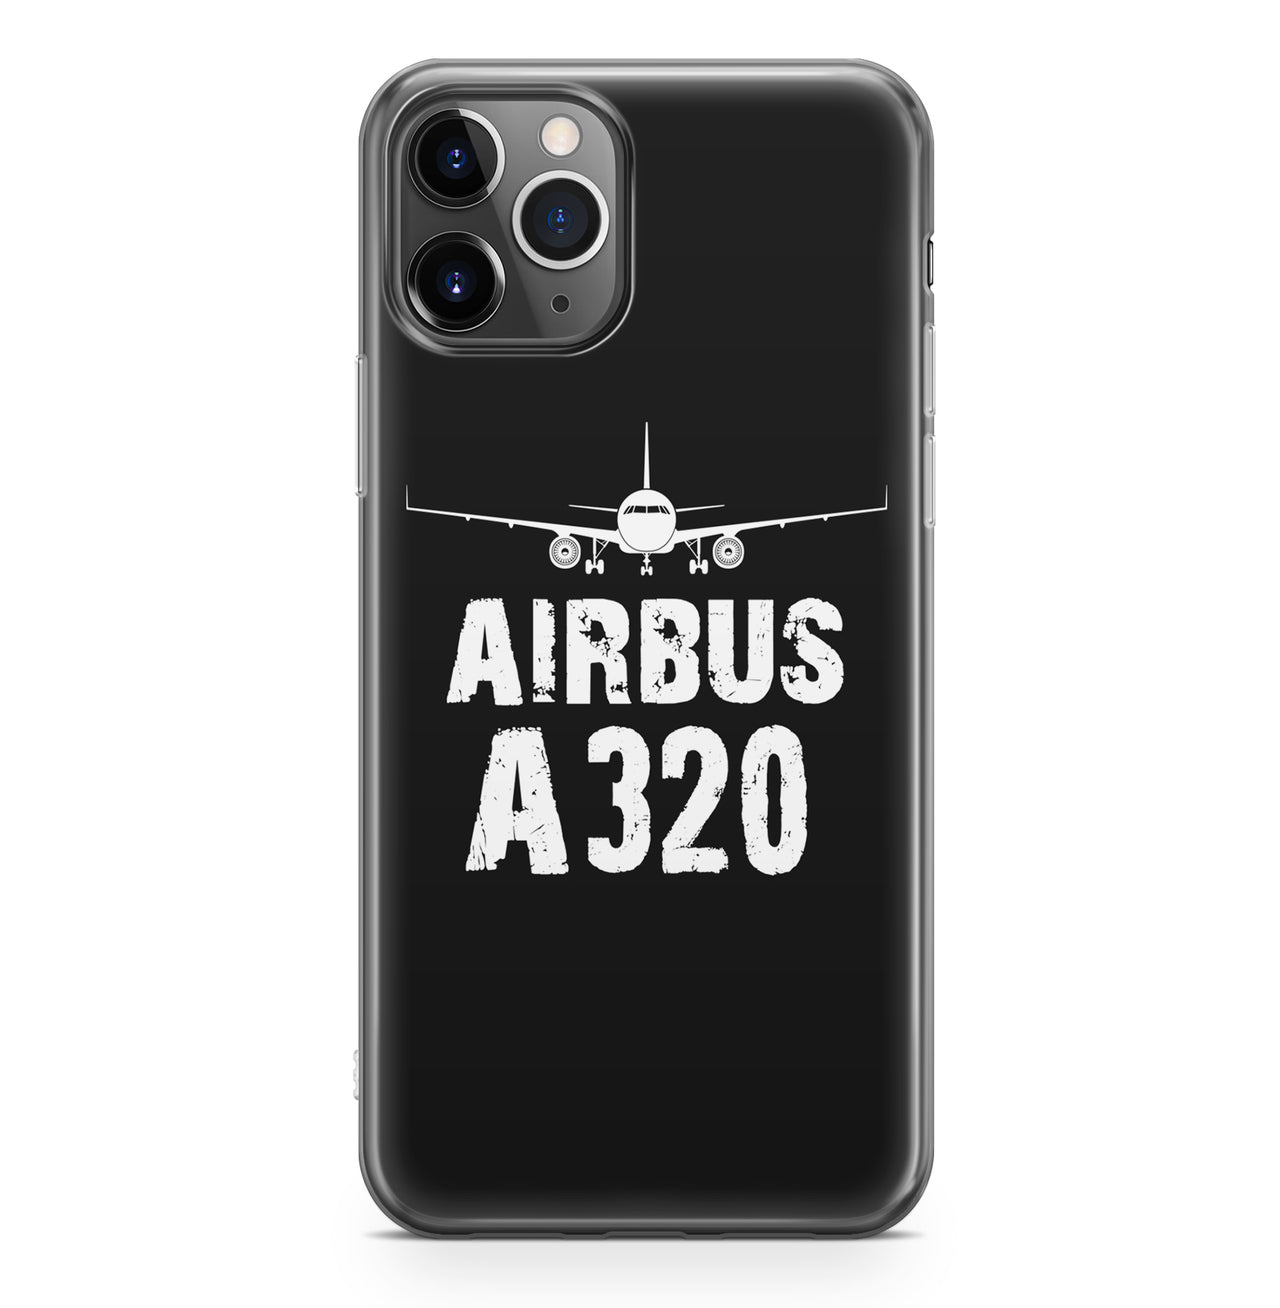 Airbus A320 & Plane Designed iPhone Cases